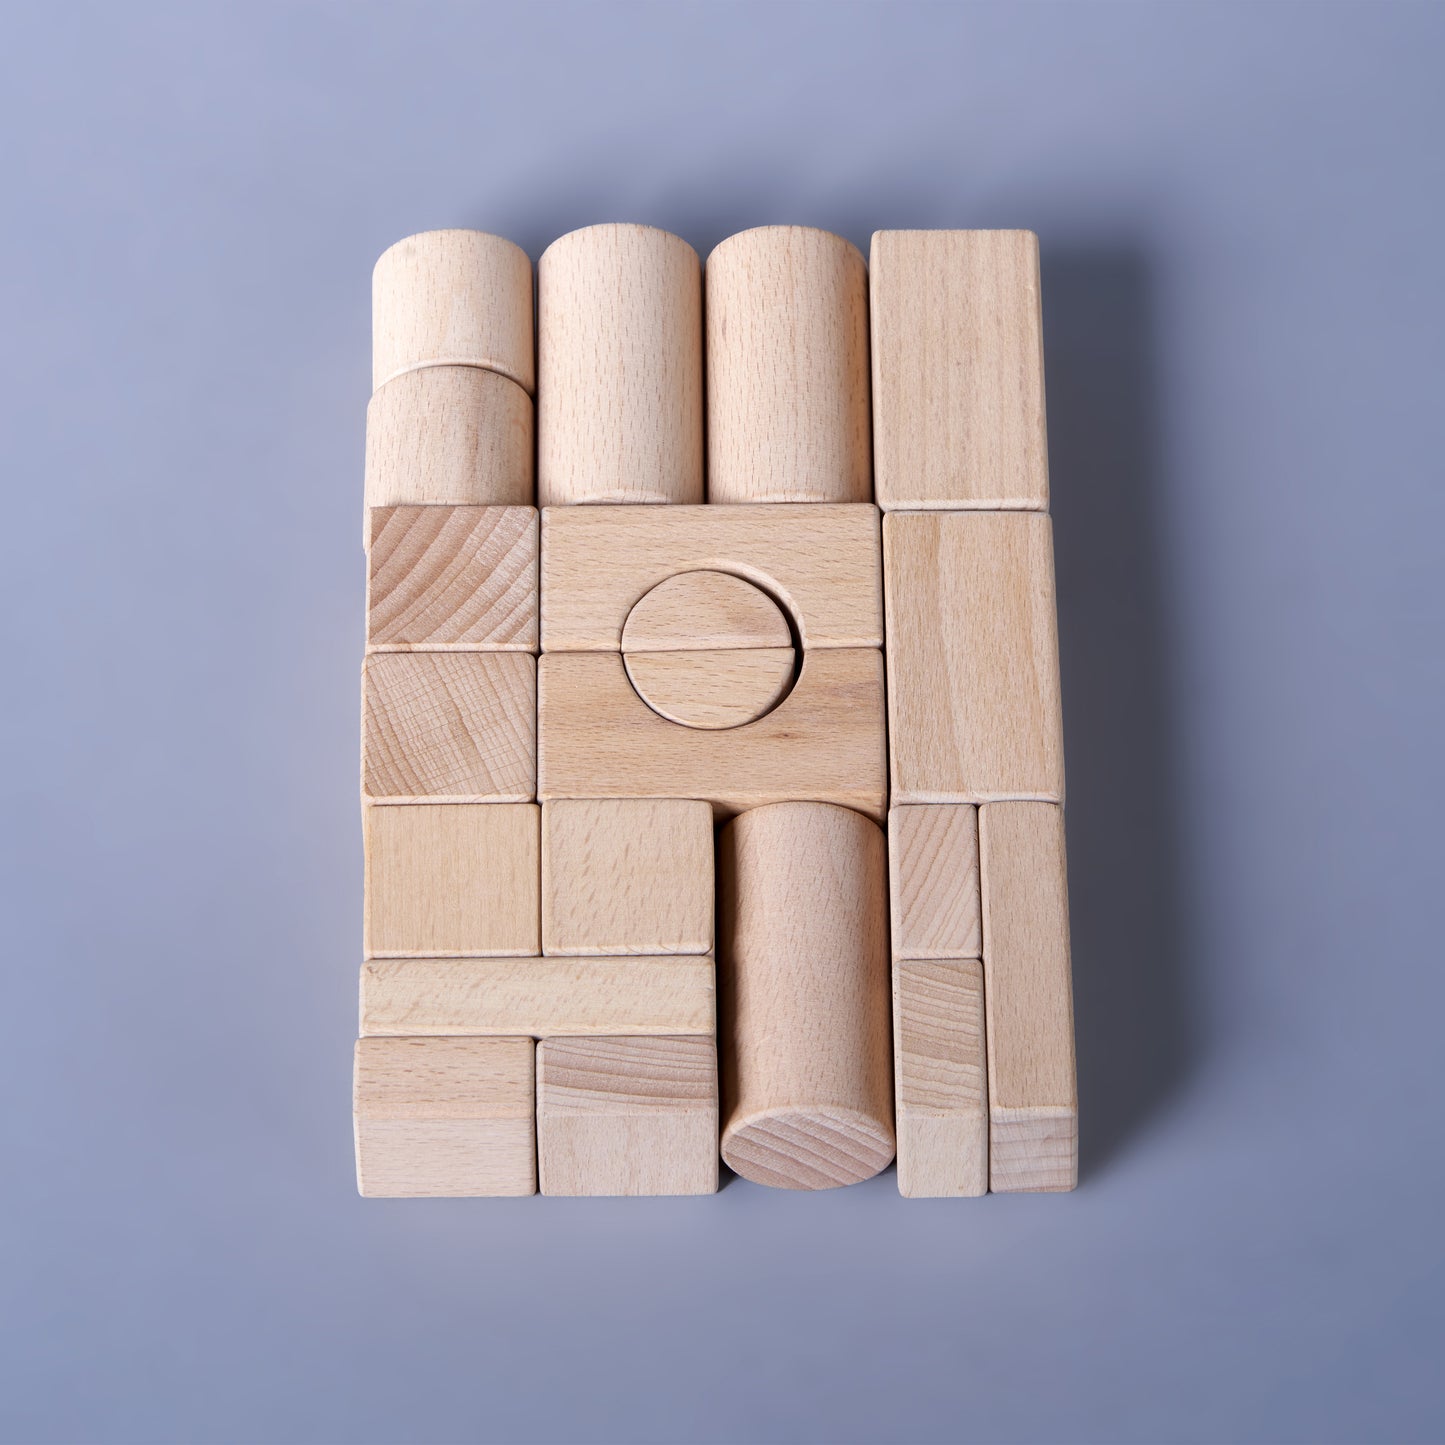 Natural wood building blocks